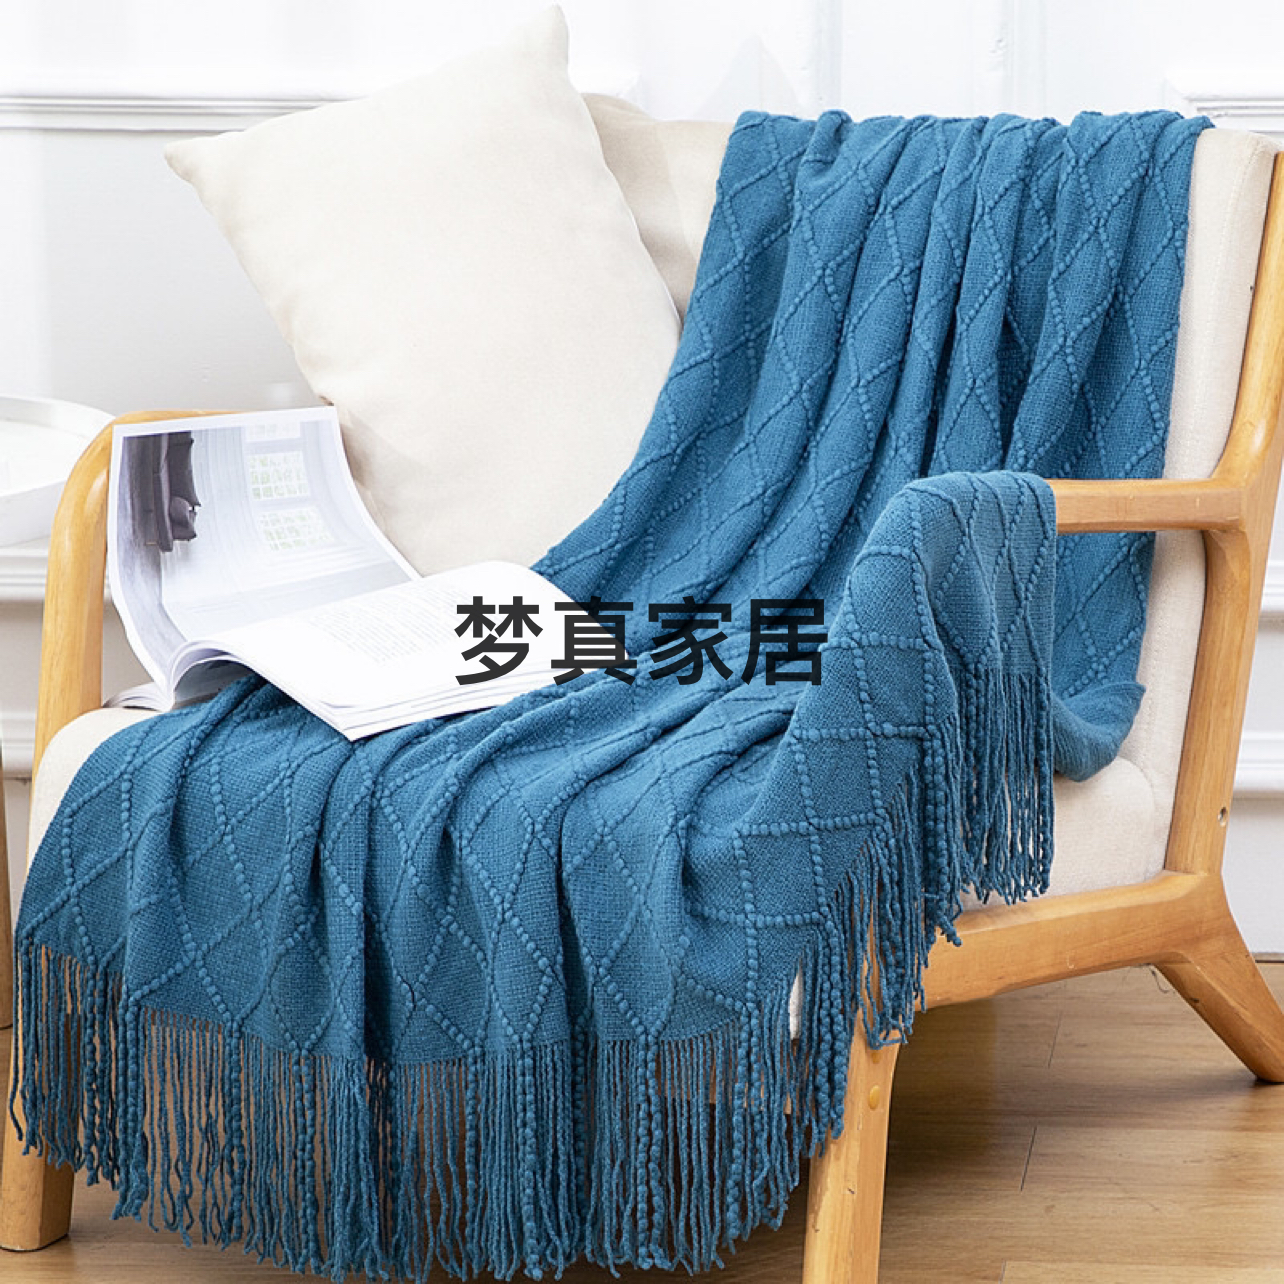 盖毯沙发毯 办公室休闲午休空调午睡毯 床尾毯针织搭毯毛线小毯子